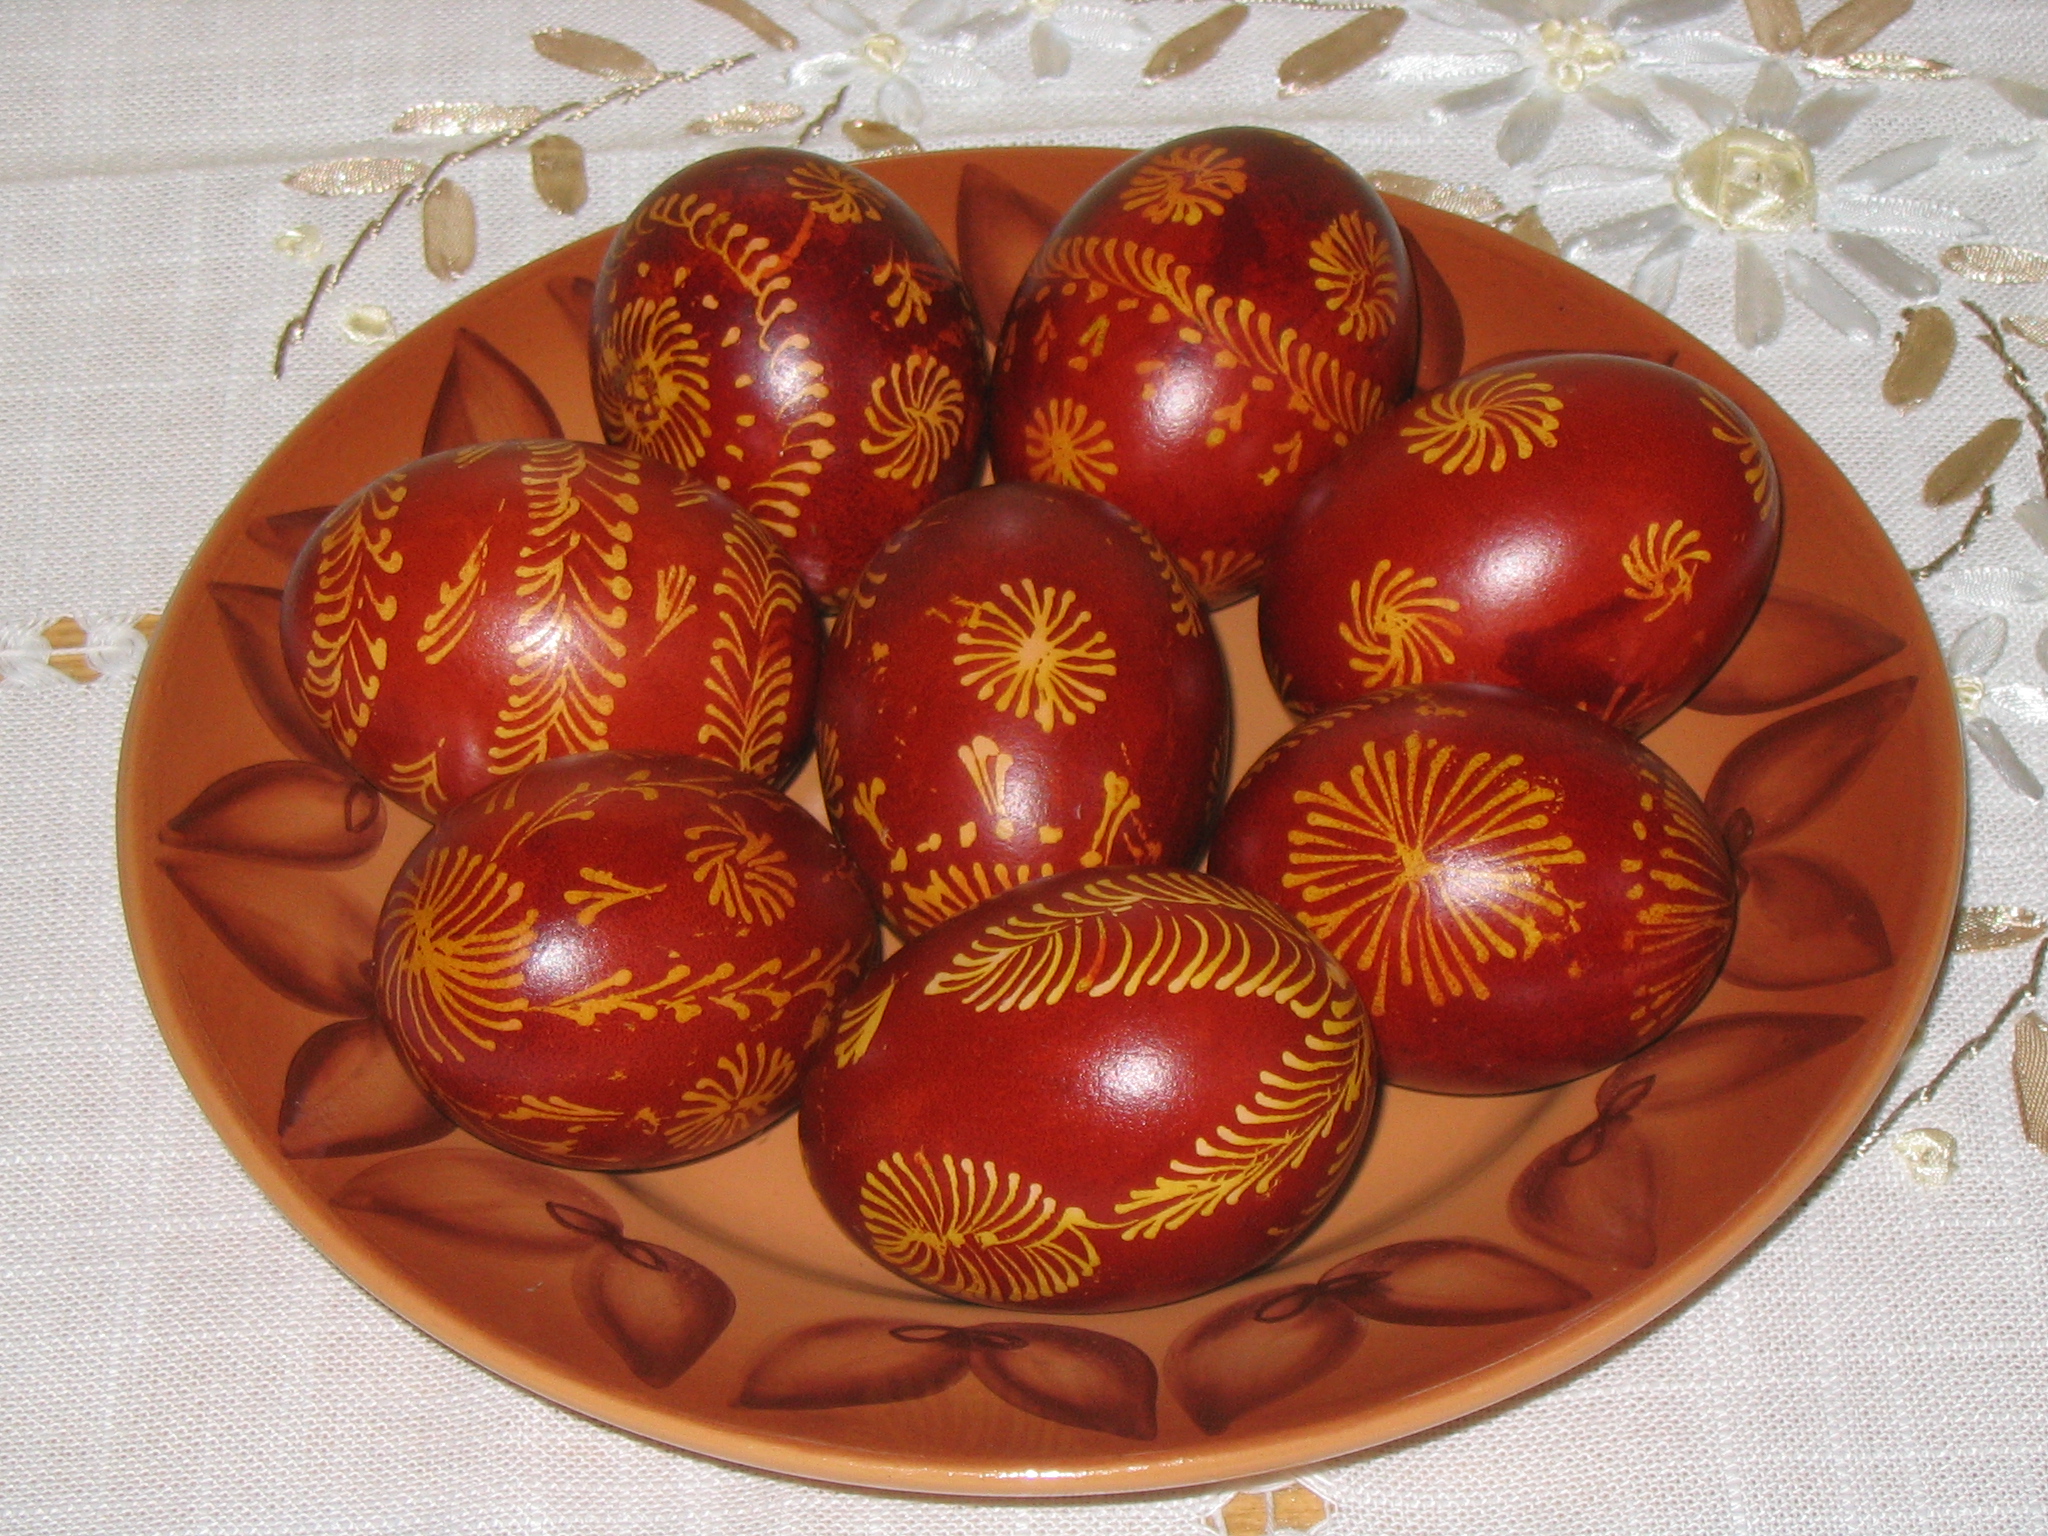 Belarusian Easter Eggs